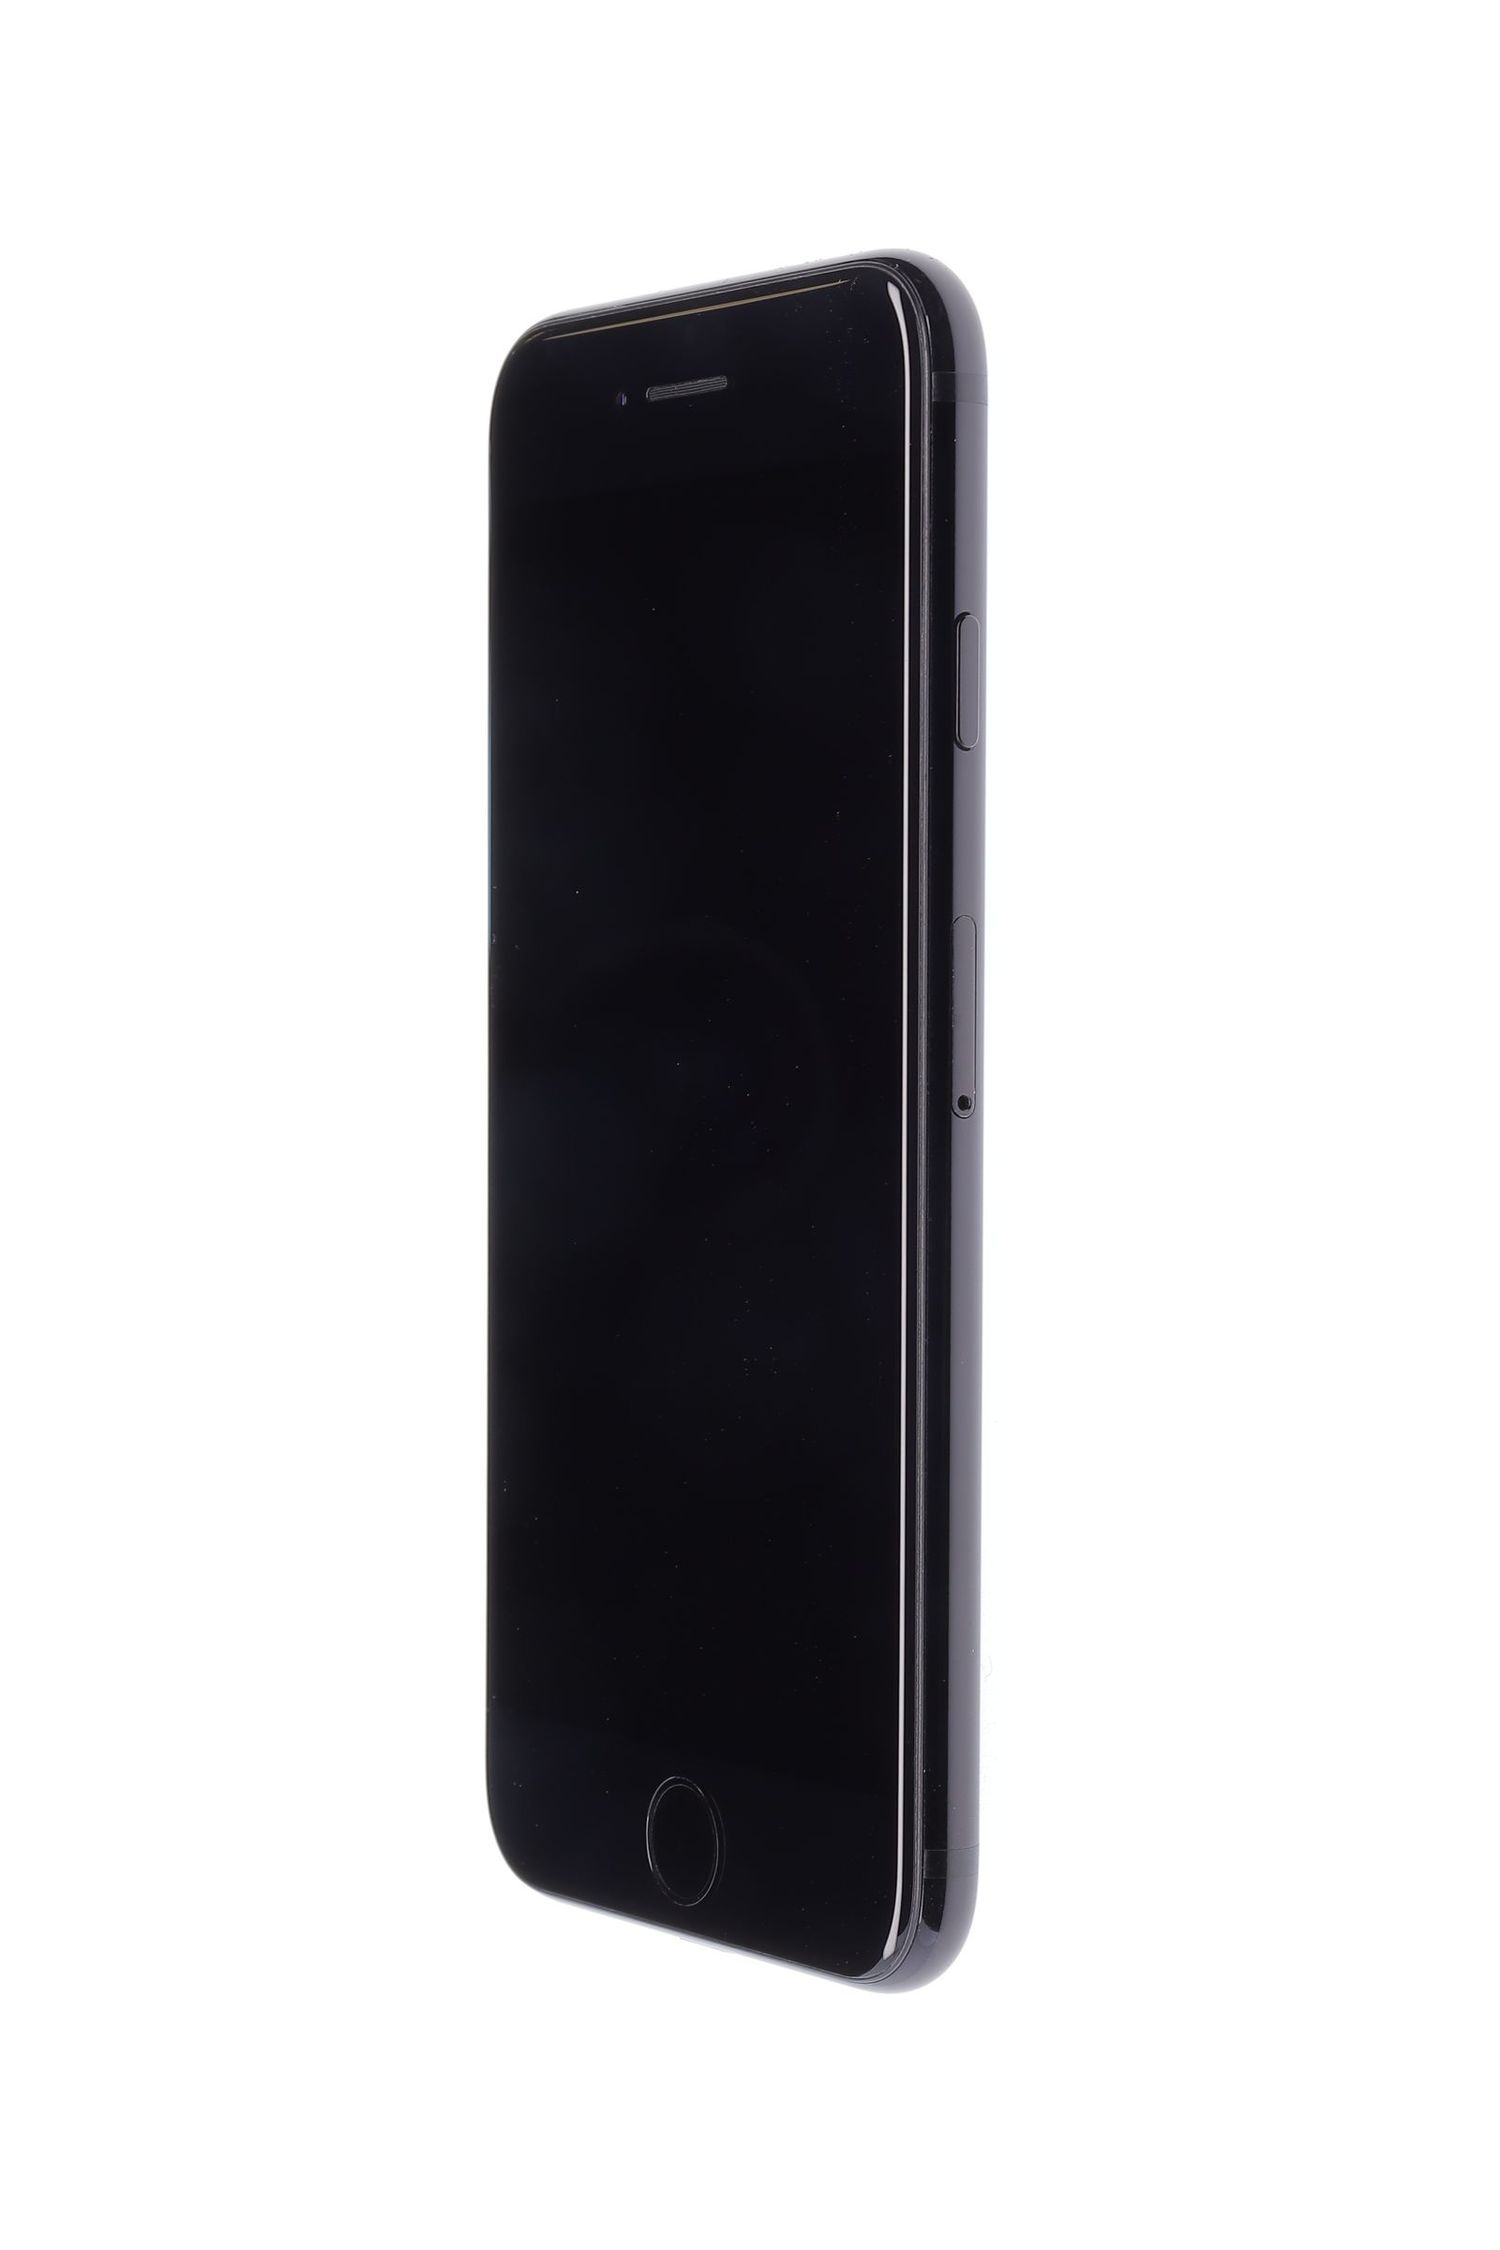 Κινητό τηλέφωνο Apple iPhone 7, Jet Black, 256 GB, Foarte Bun